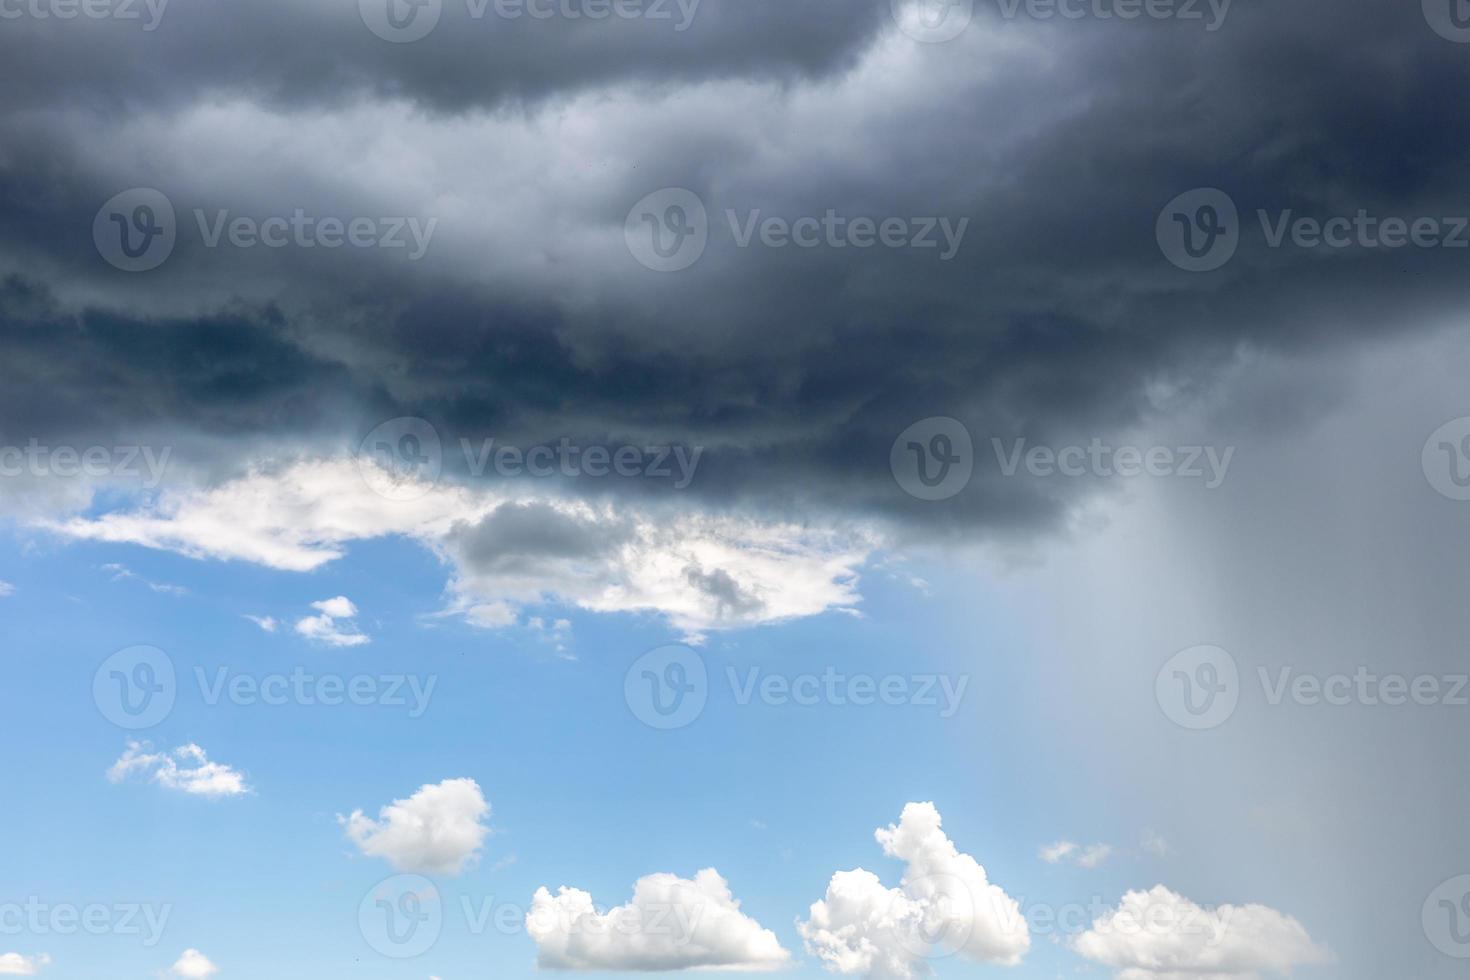 nuage de pluie. changement météorologique. différentes situations climatiques dans une seule image. photo